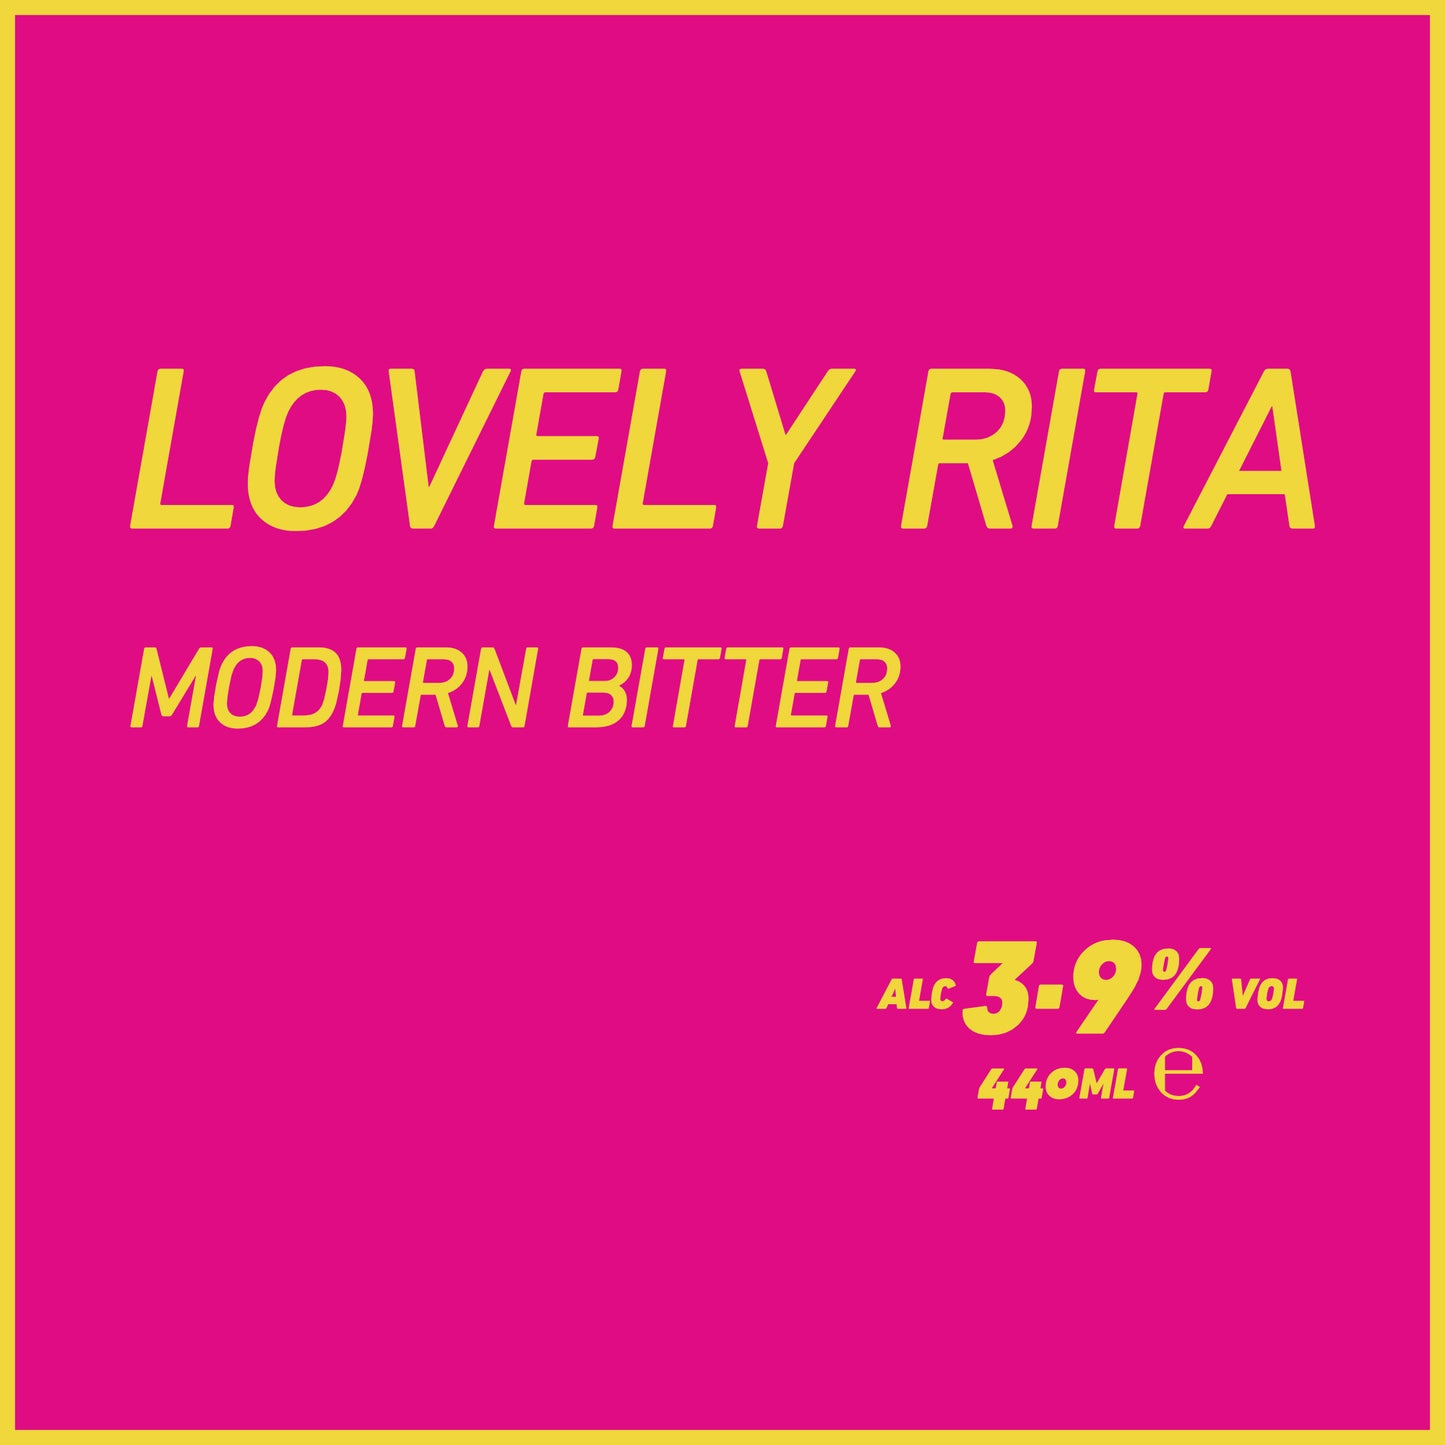 Lovely Rita Modern Bitter